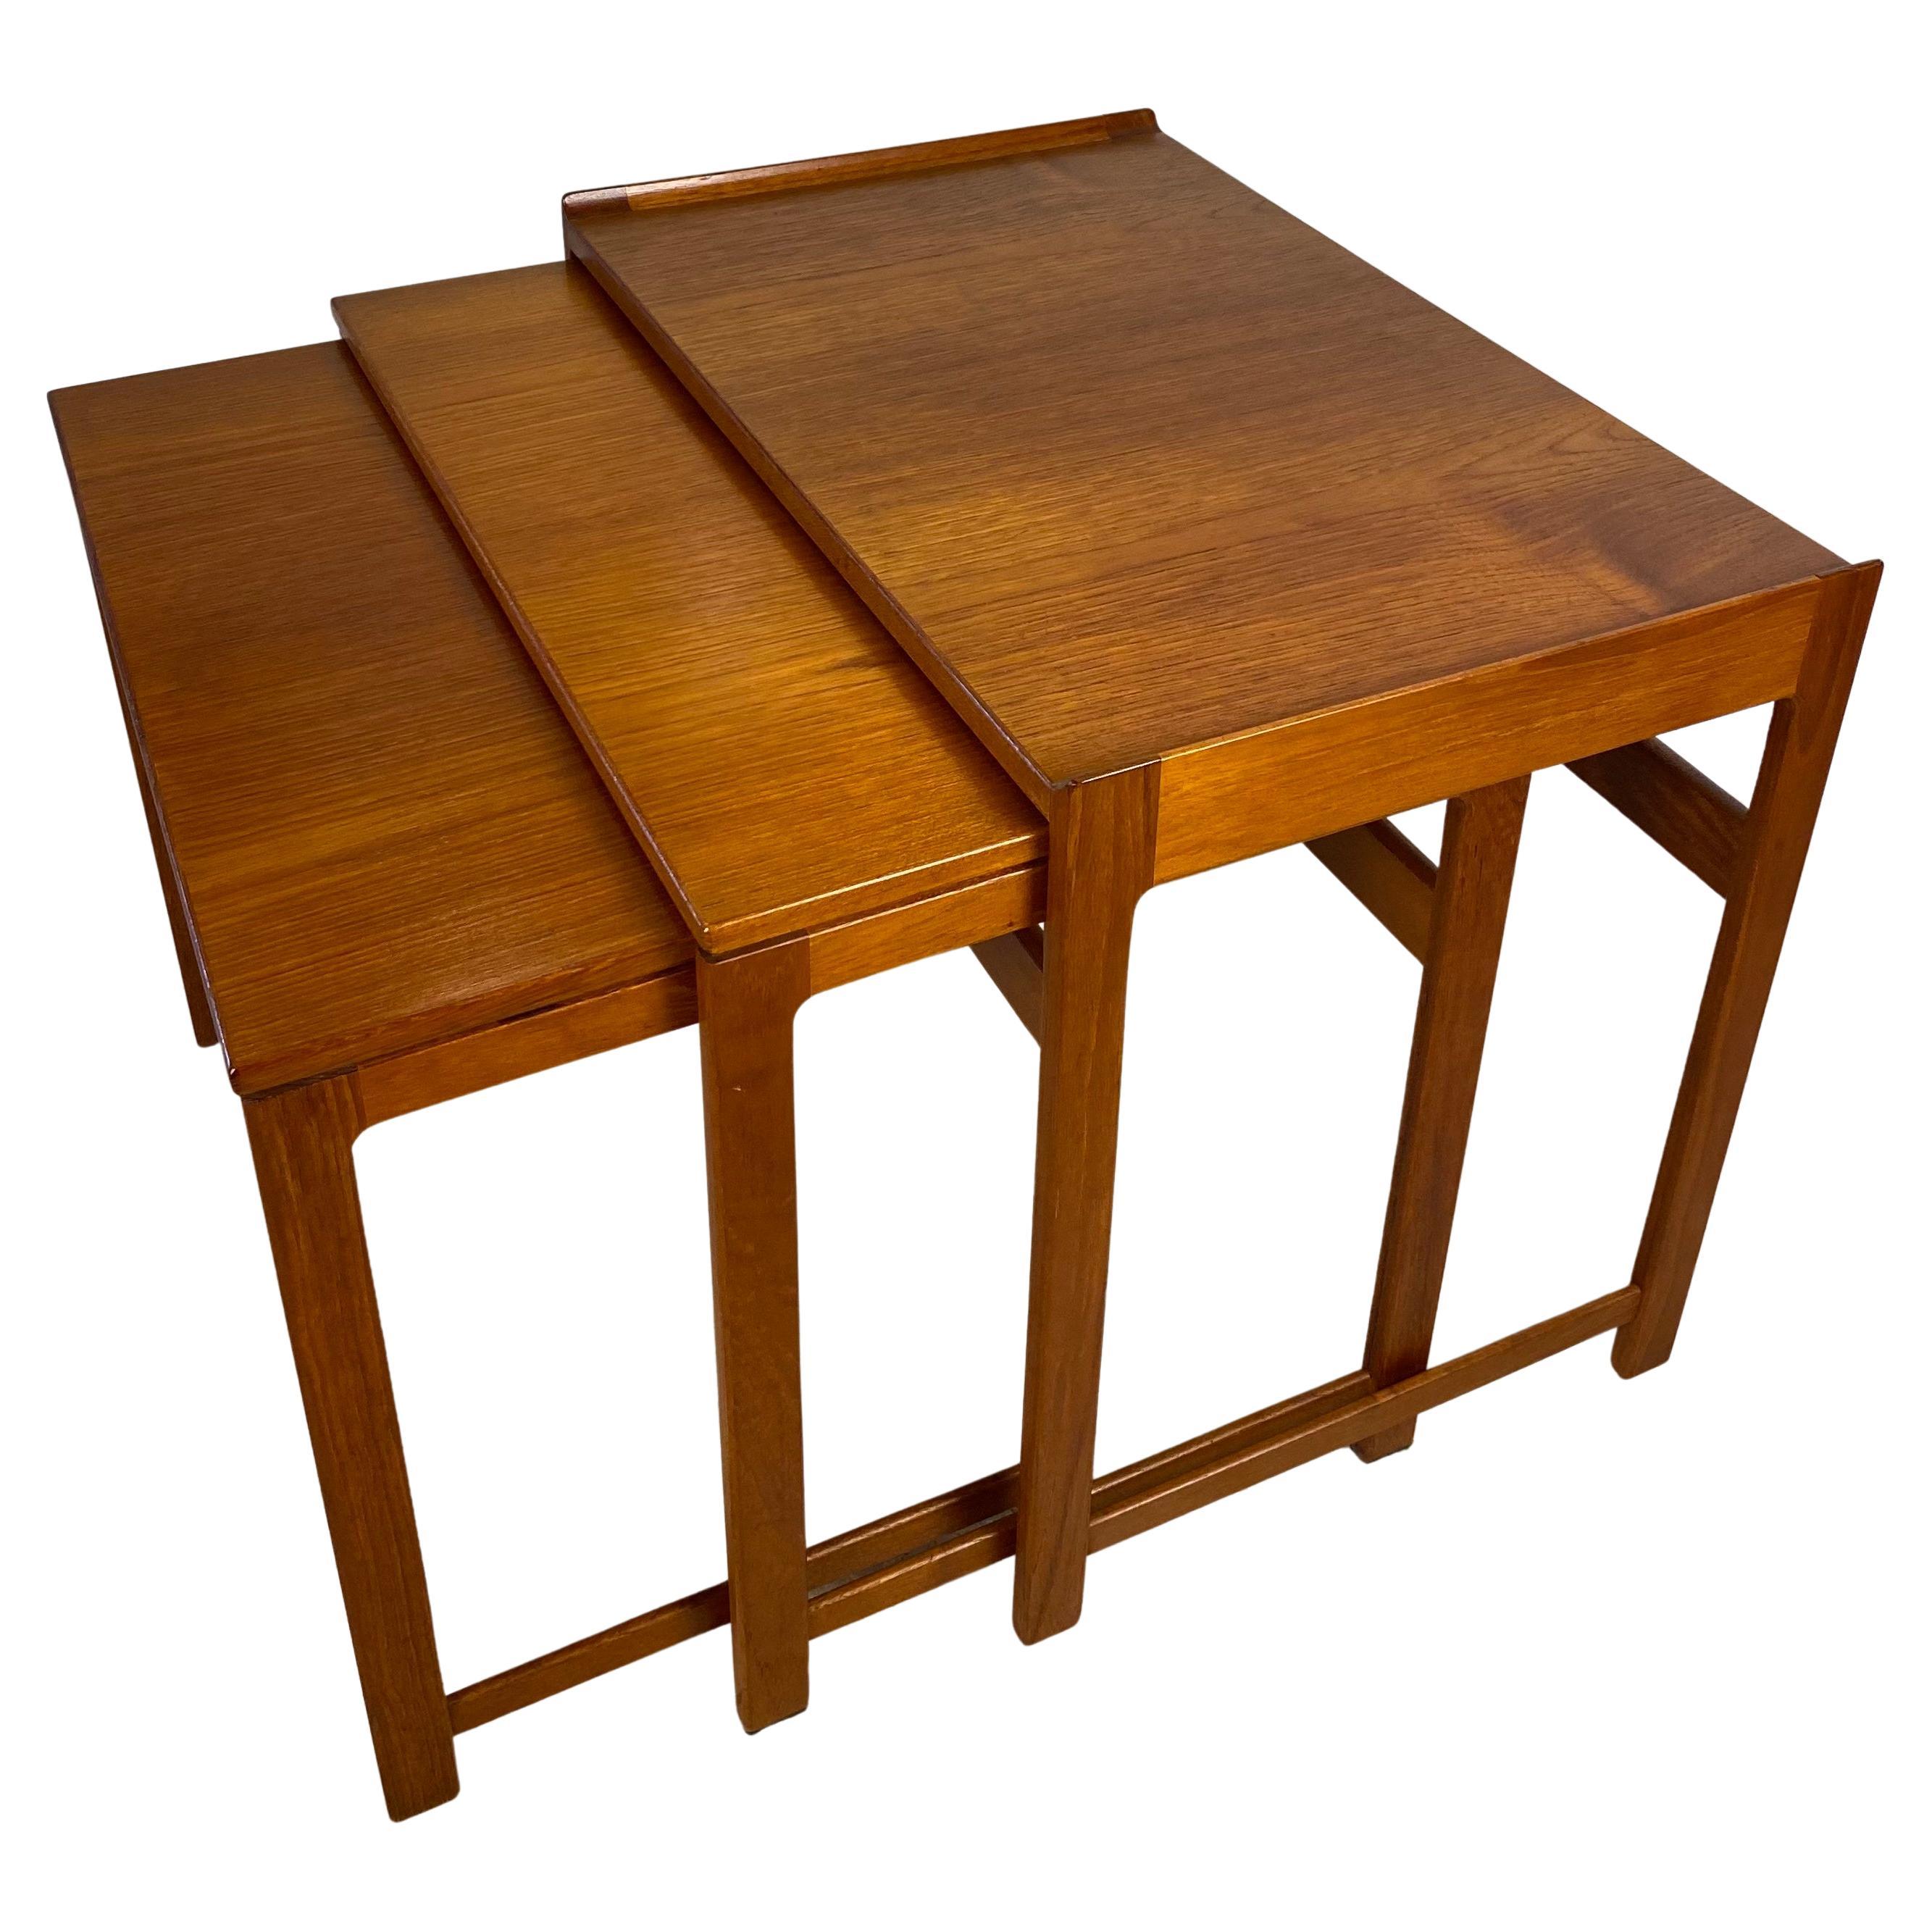 3 Mid-Century Wooden Nesting Tables or Gigogne End Tables Hans J. Wegner Style